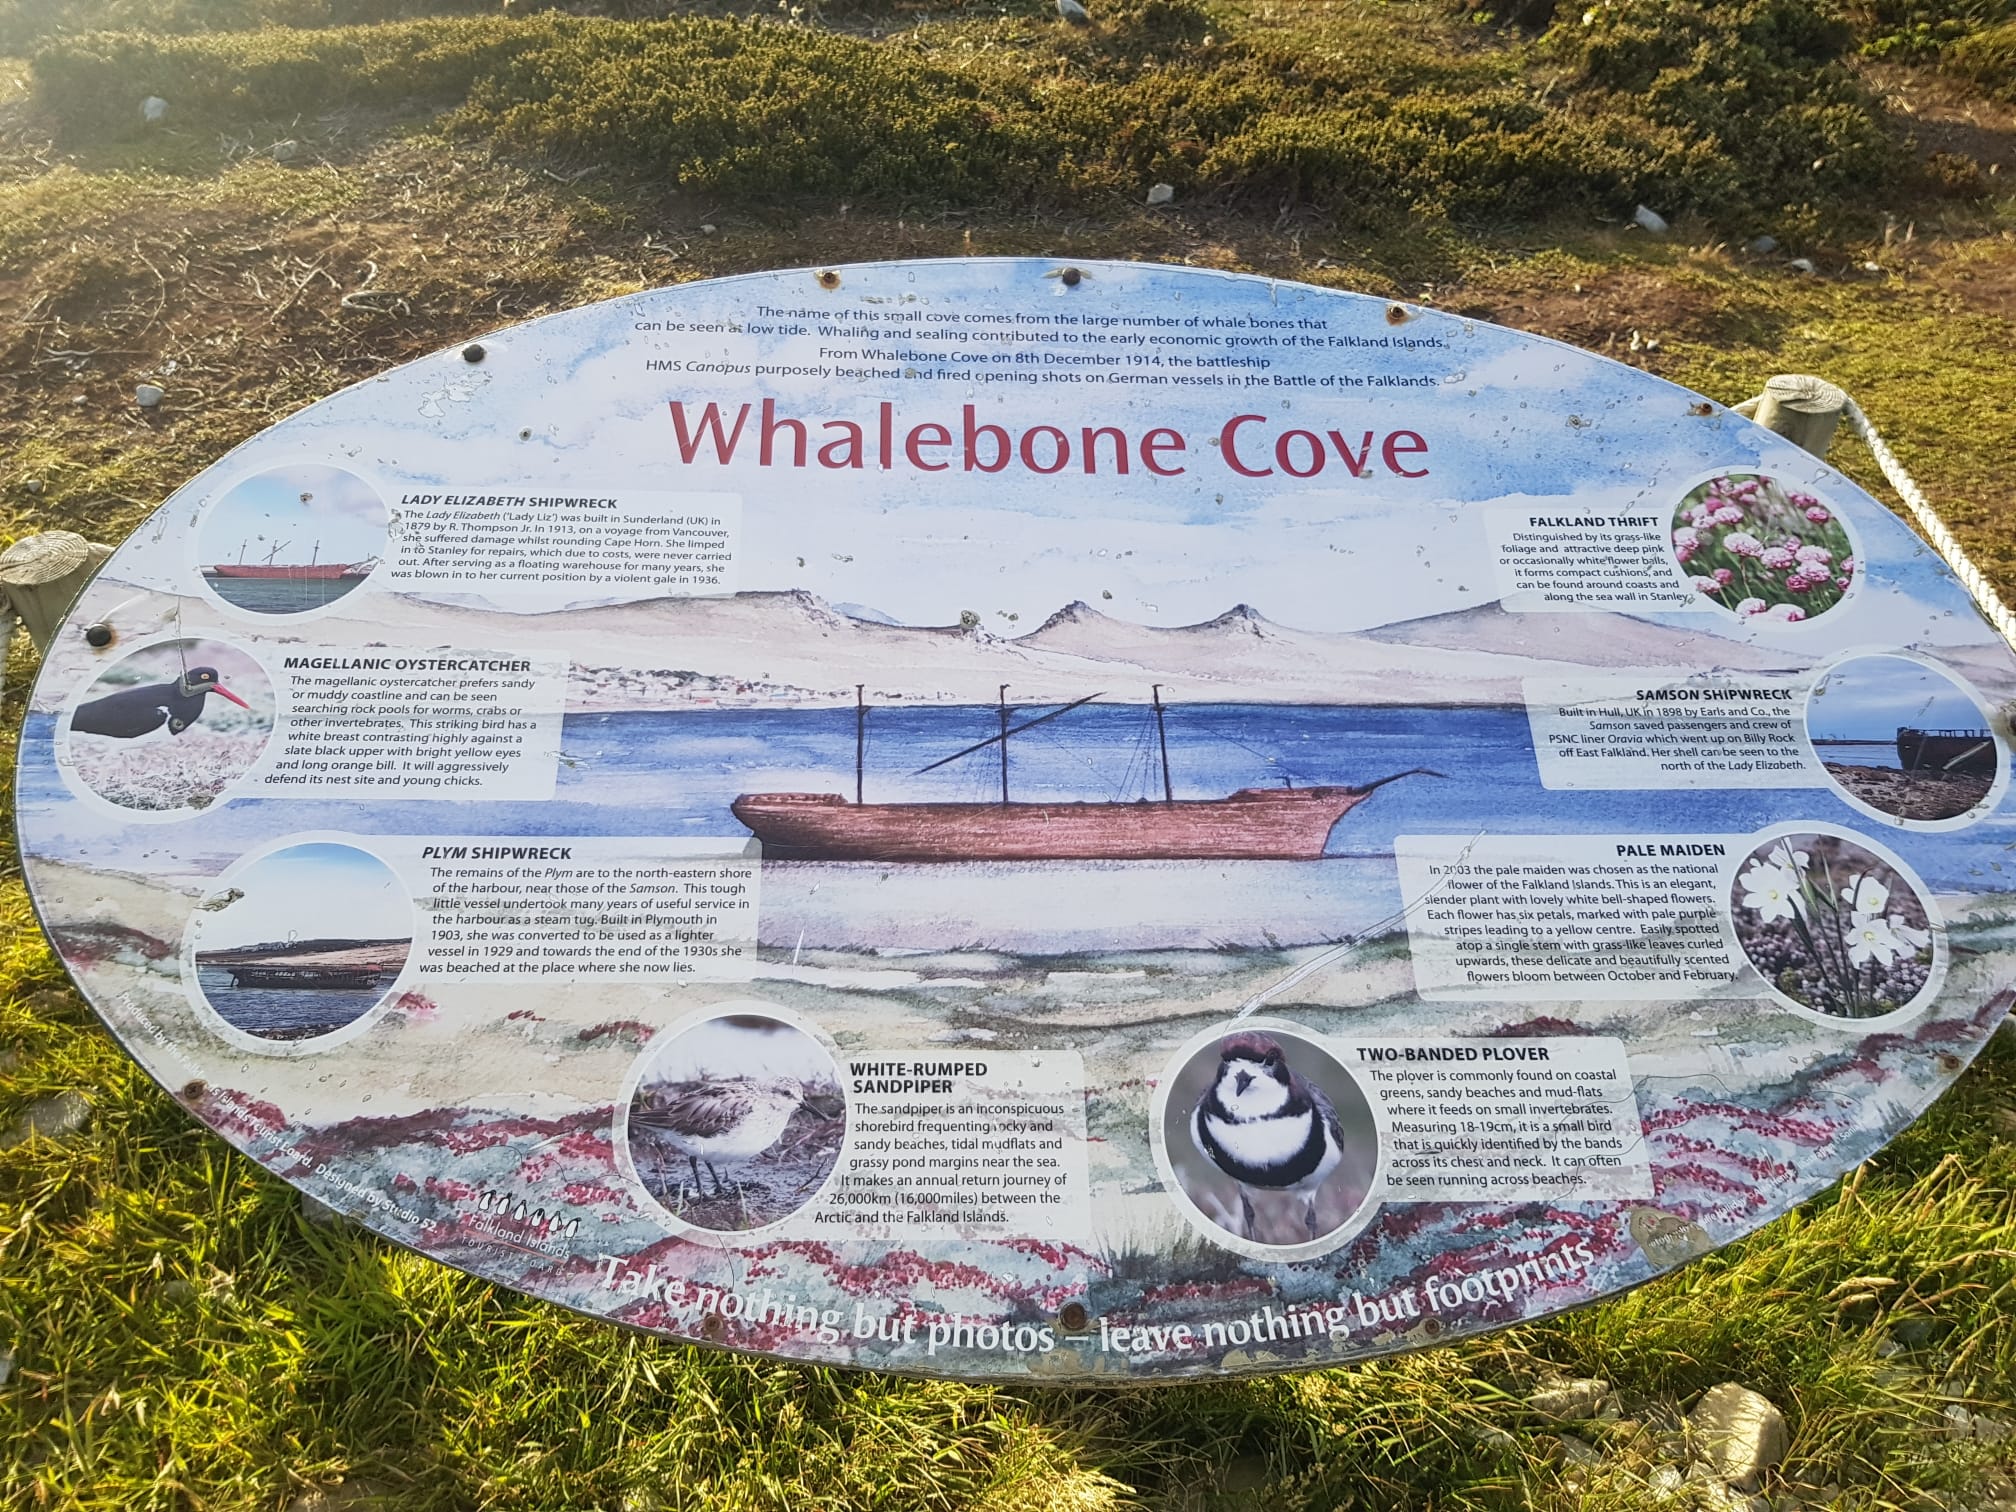 19/12/19 Whalebone Cove